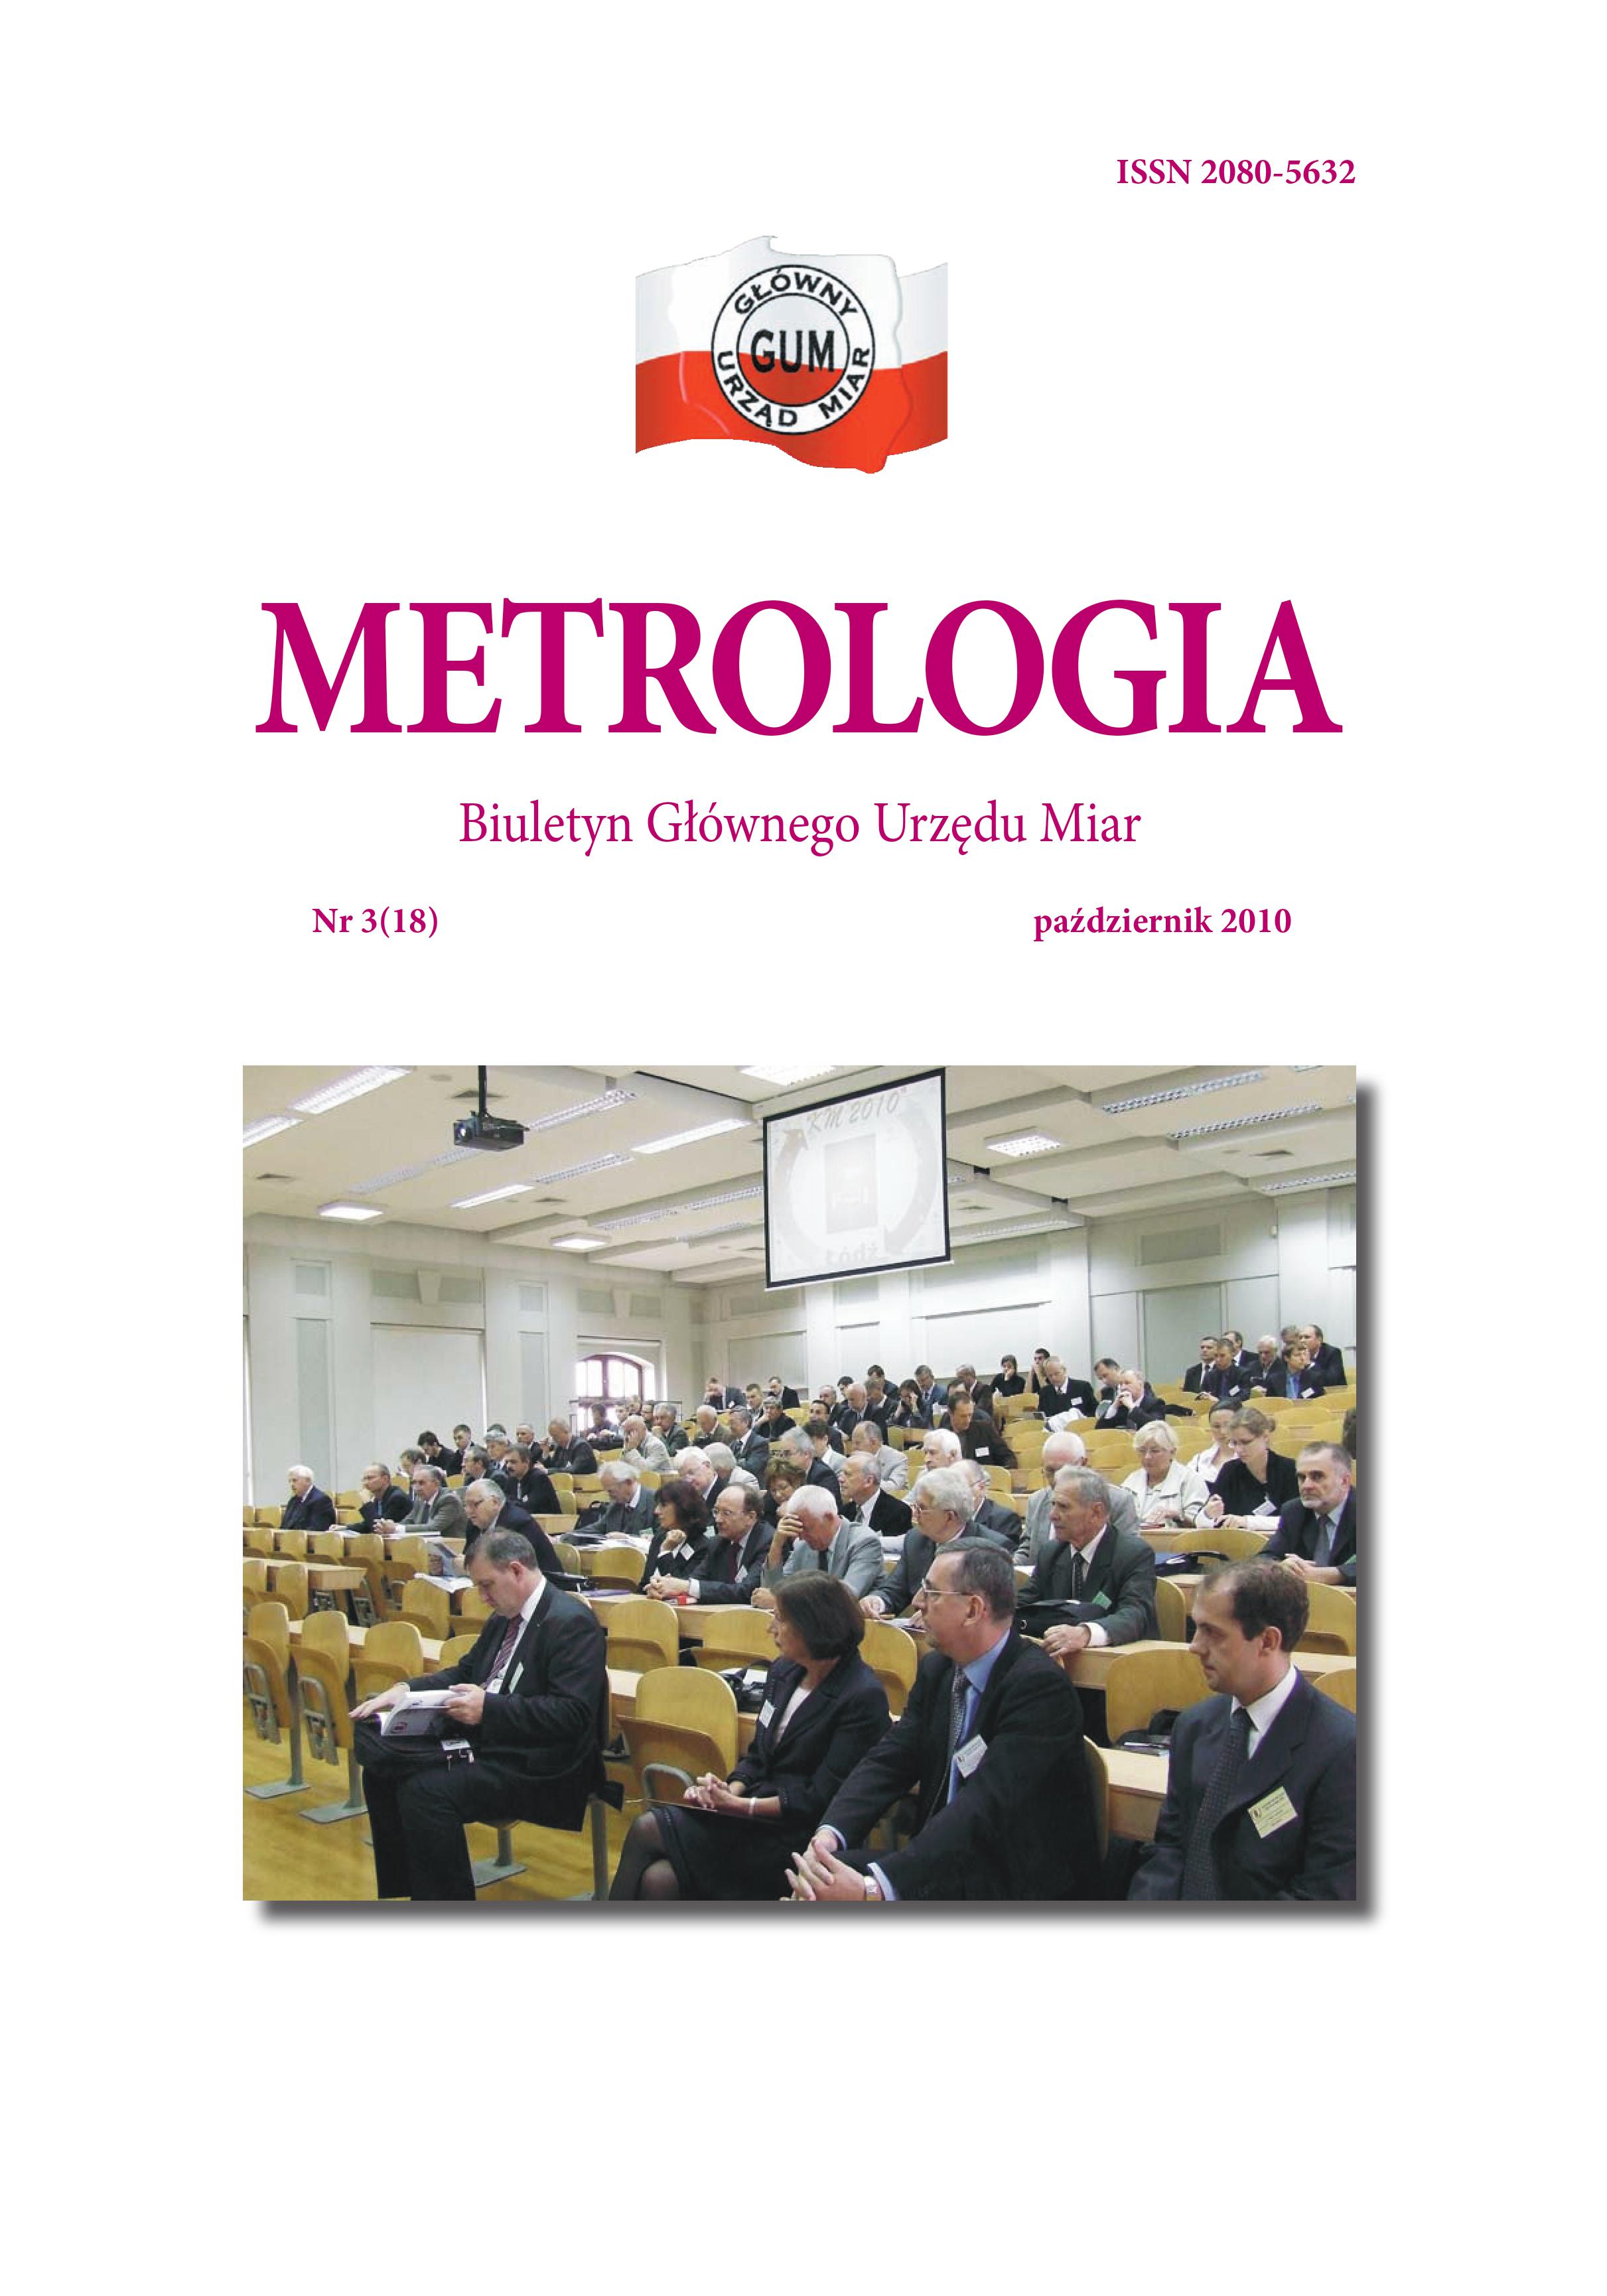 Okładka nr 3 z 2010 r. Biuletynu GUM Metrologia. Na okładce u góry biało-czerwone logo GUM, niżej tytuł Metrologia, a pod nim zdjęcie: kilkadziesiąt osób siedzi na sali konferencyjnej.